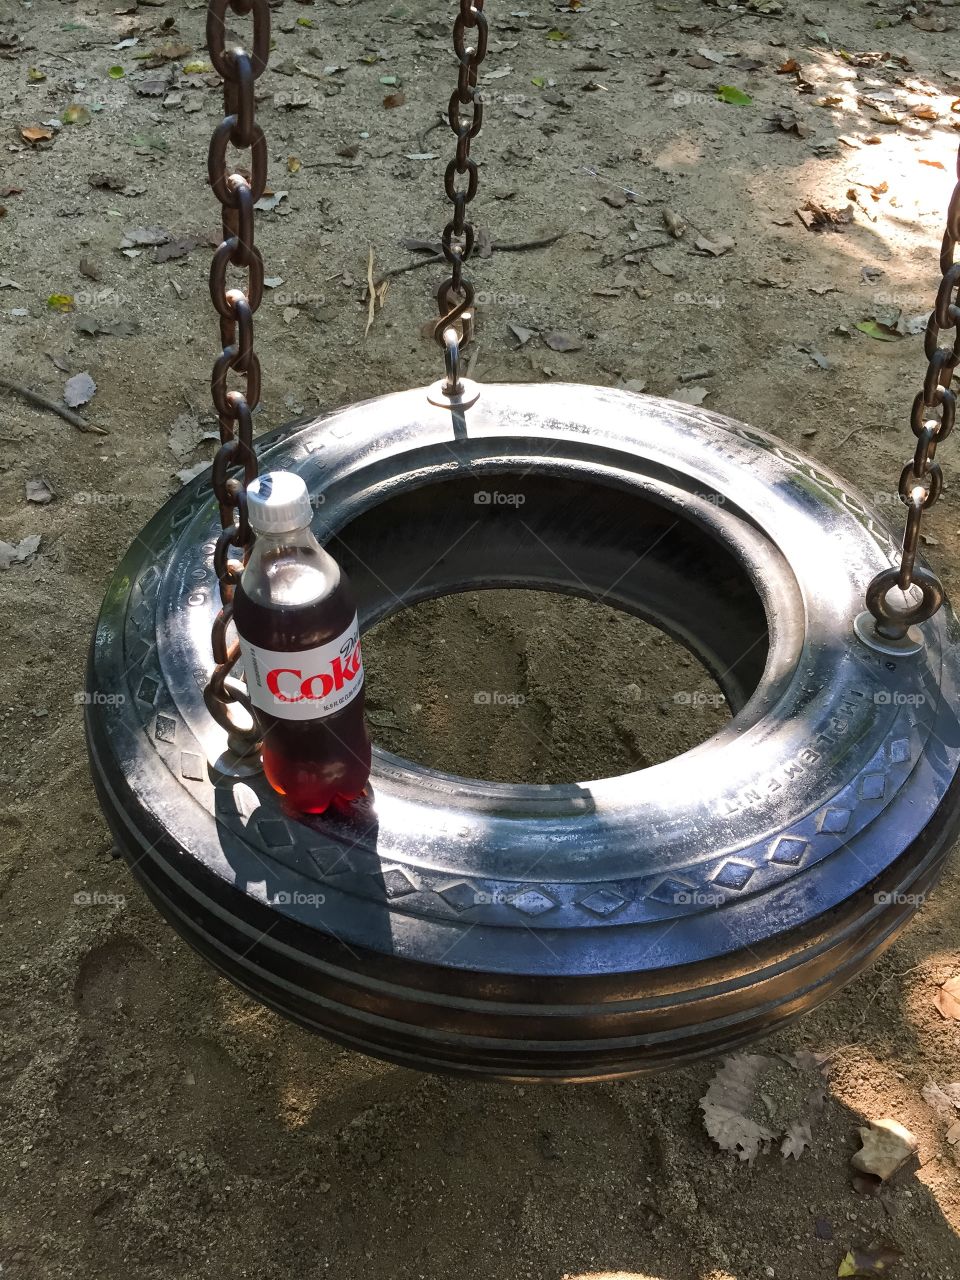 Tire Swing Hangout with Diet Coke